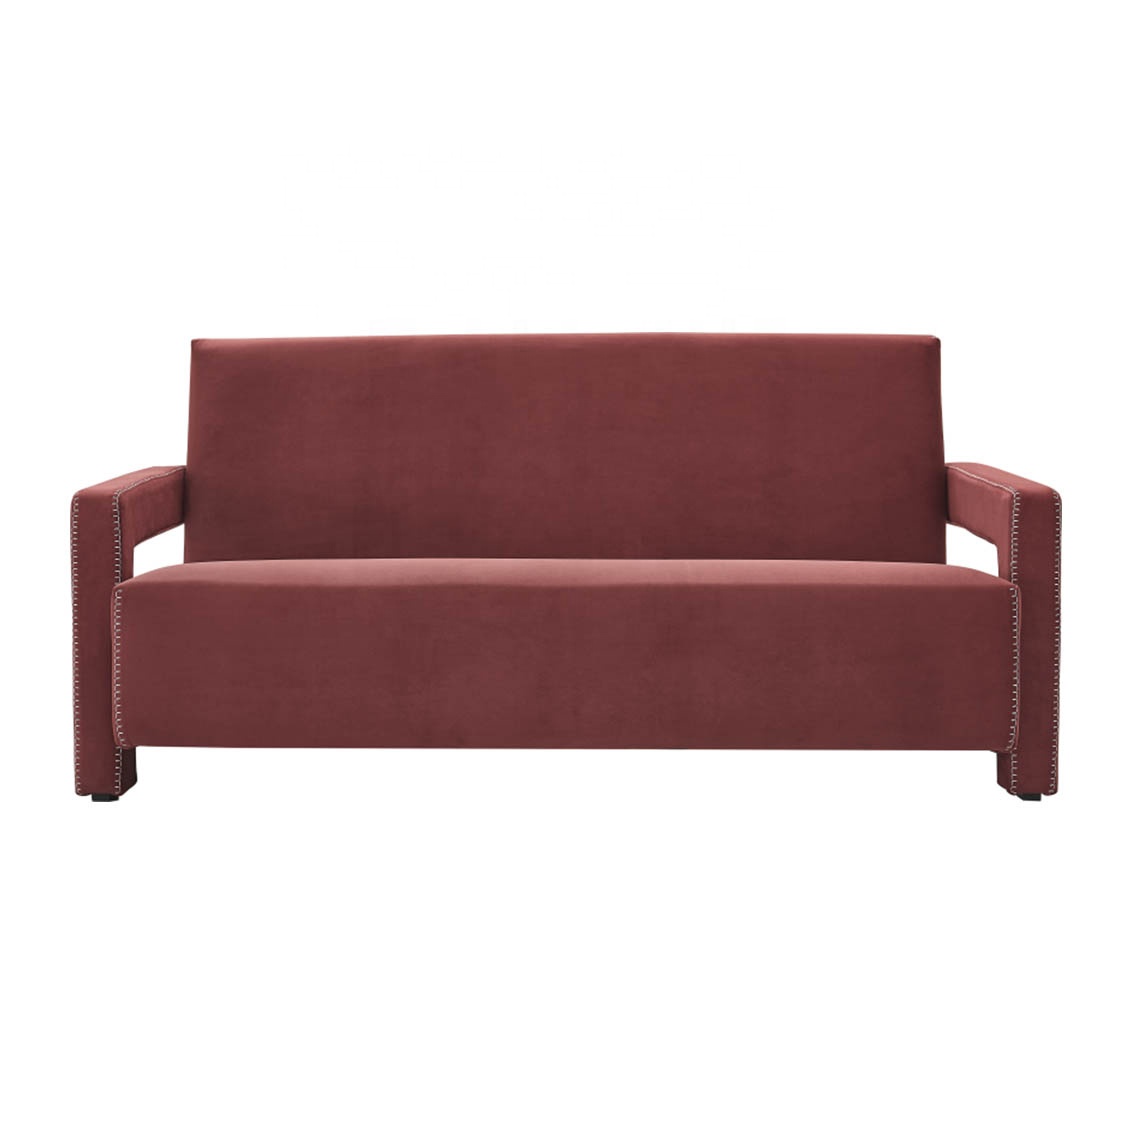 Modern Living Room Leisure Furniture Red Velvet Lounge Chair